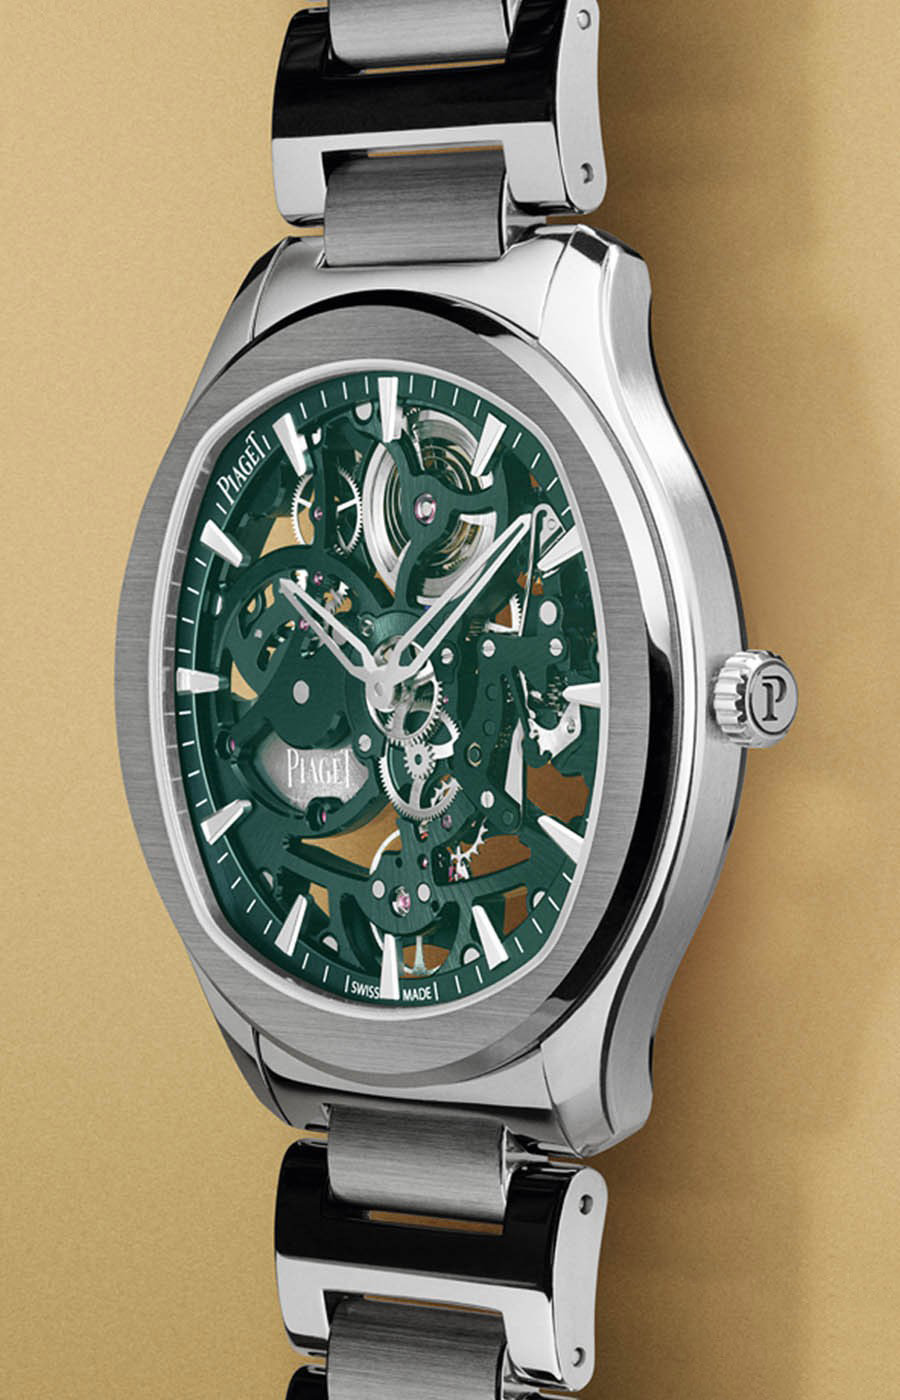 全新色彩彰显果敢型格-伯爵推出Polo系列绿色腕表-腕表百科